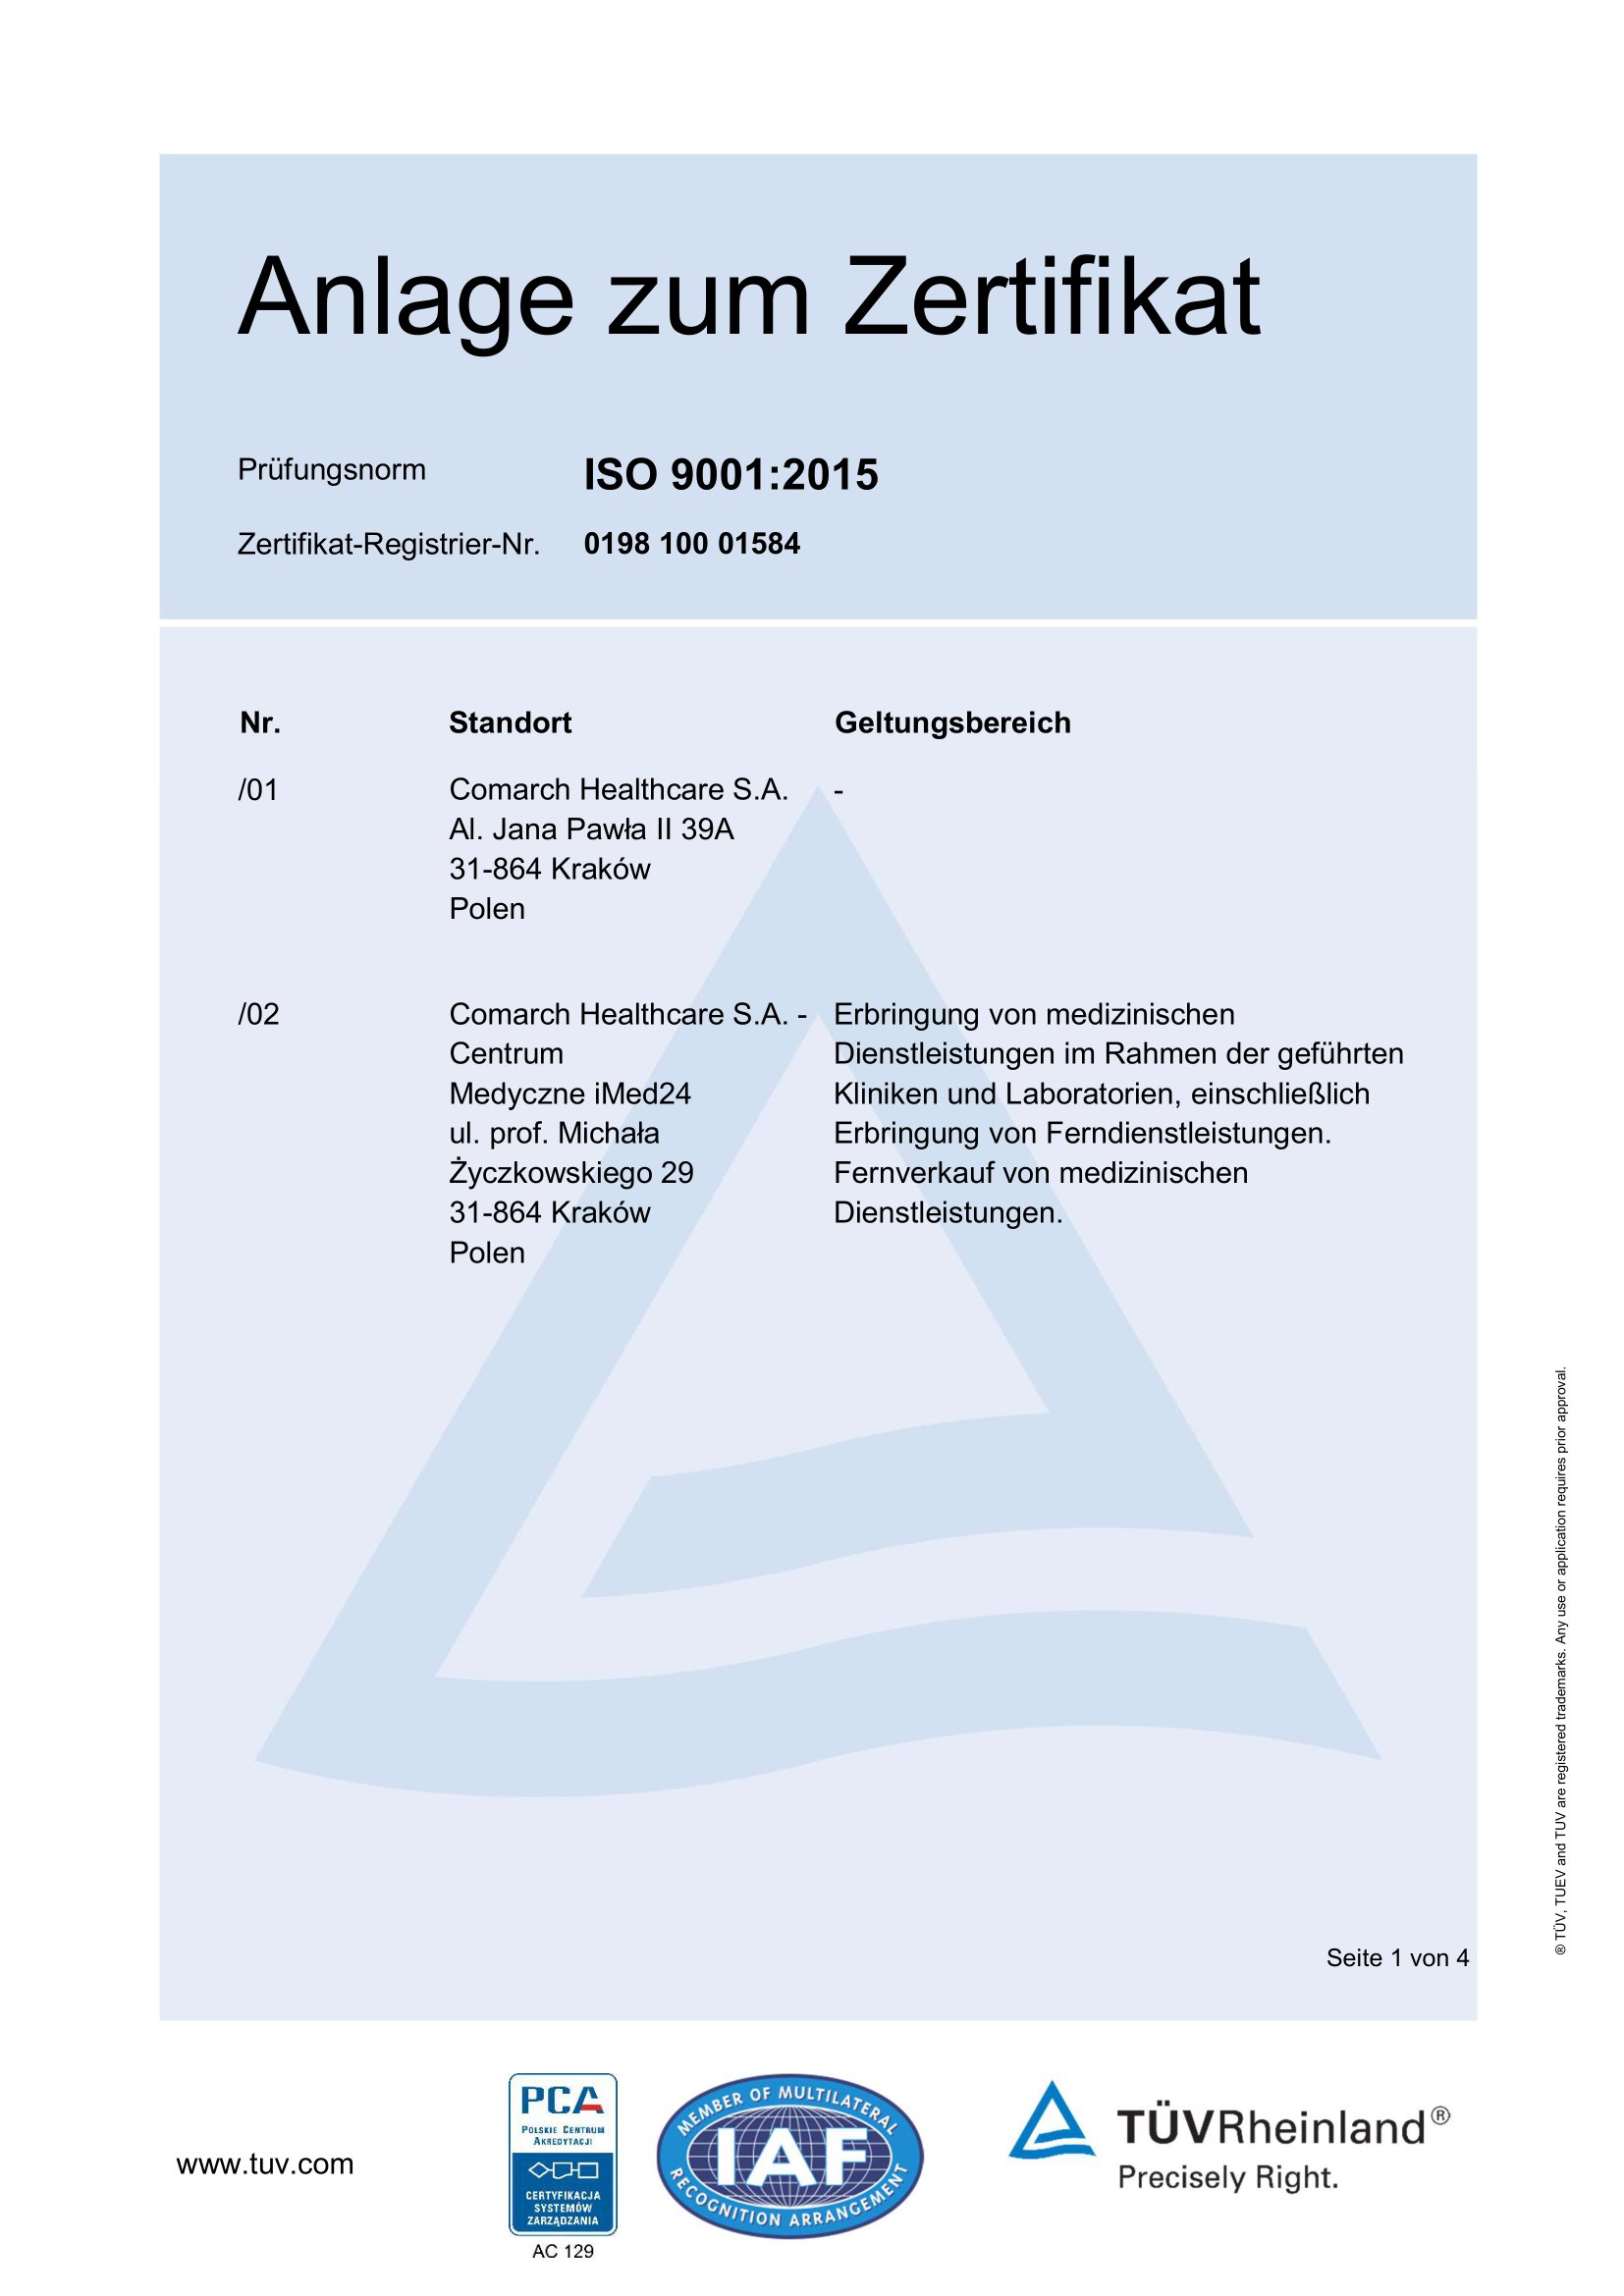 Aneks do certyfikatu ISO 9001:2015 wersja niemieckojęzyczna